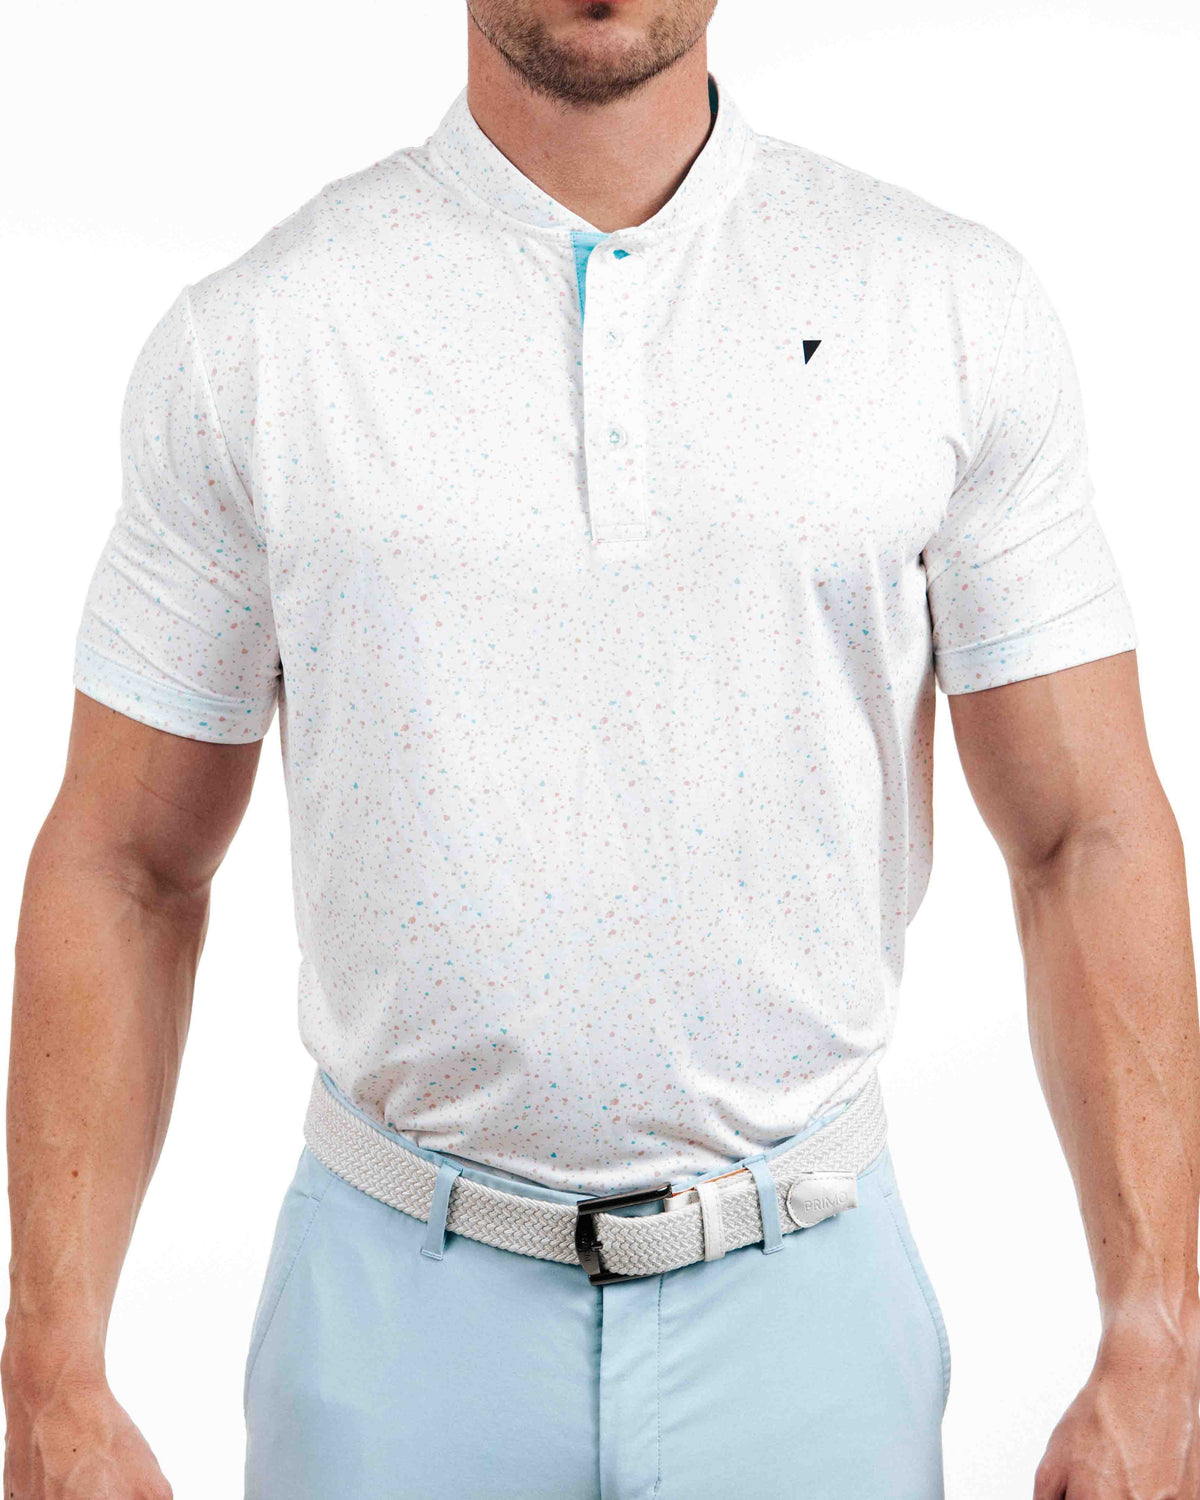 Primo Blade Collar Polo - Cotton Candy – Primo Golf Apparel